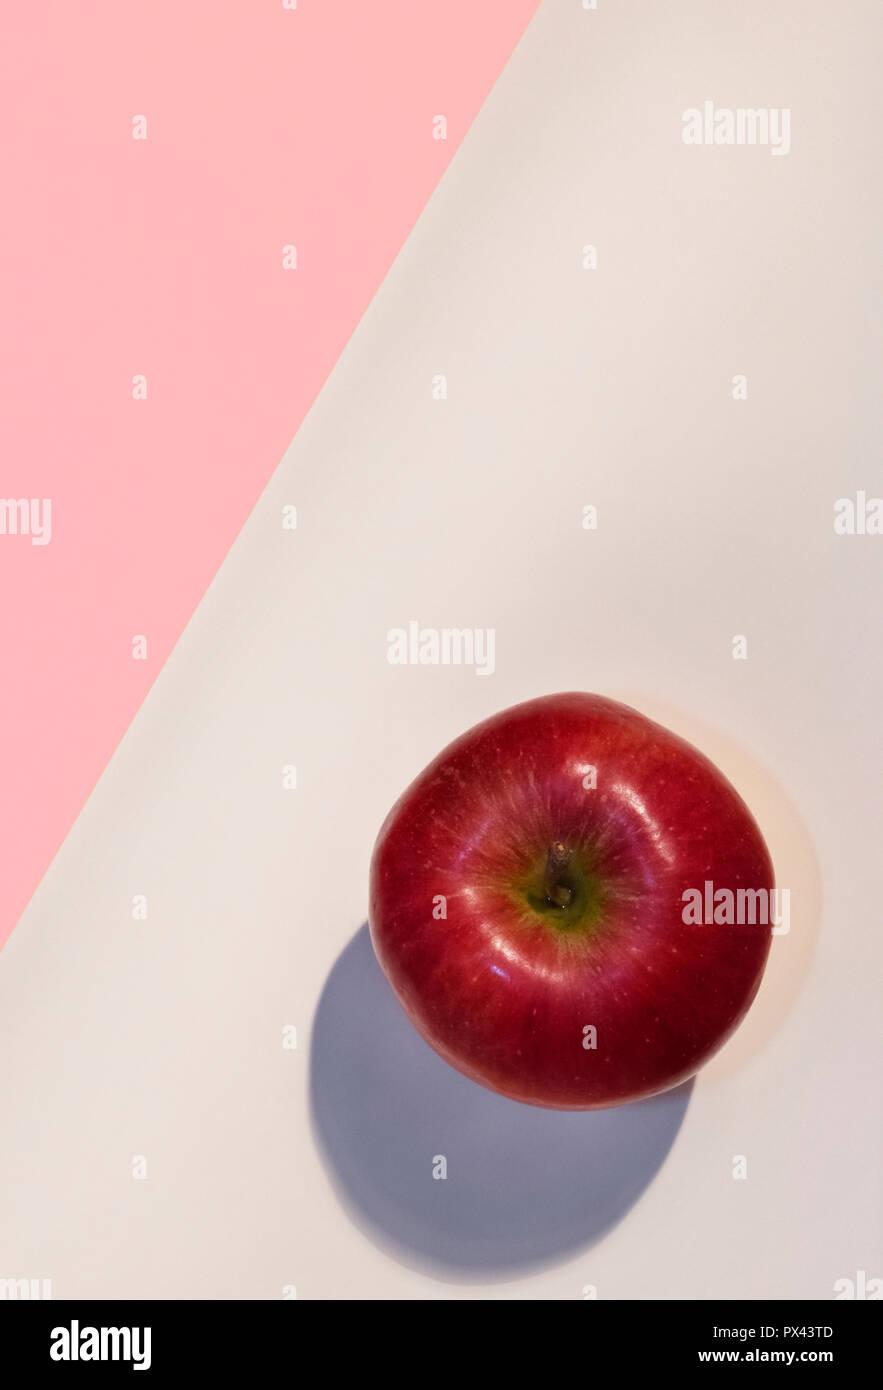 Ein heller roter Apfel auf einem rosa und weißen Hintergrund, schöne Farben, studio Shot, Ansicht von oben, vertikale Zusammensetzung Stockfoto